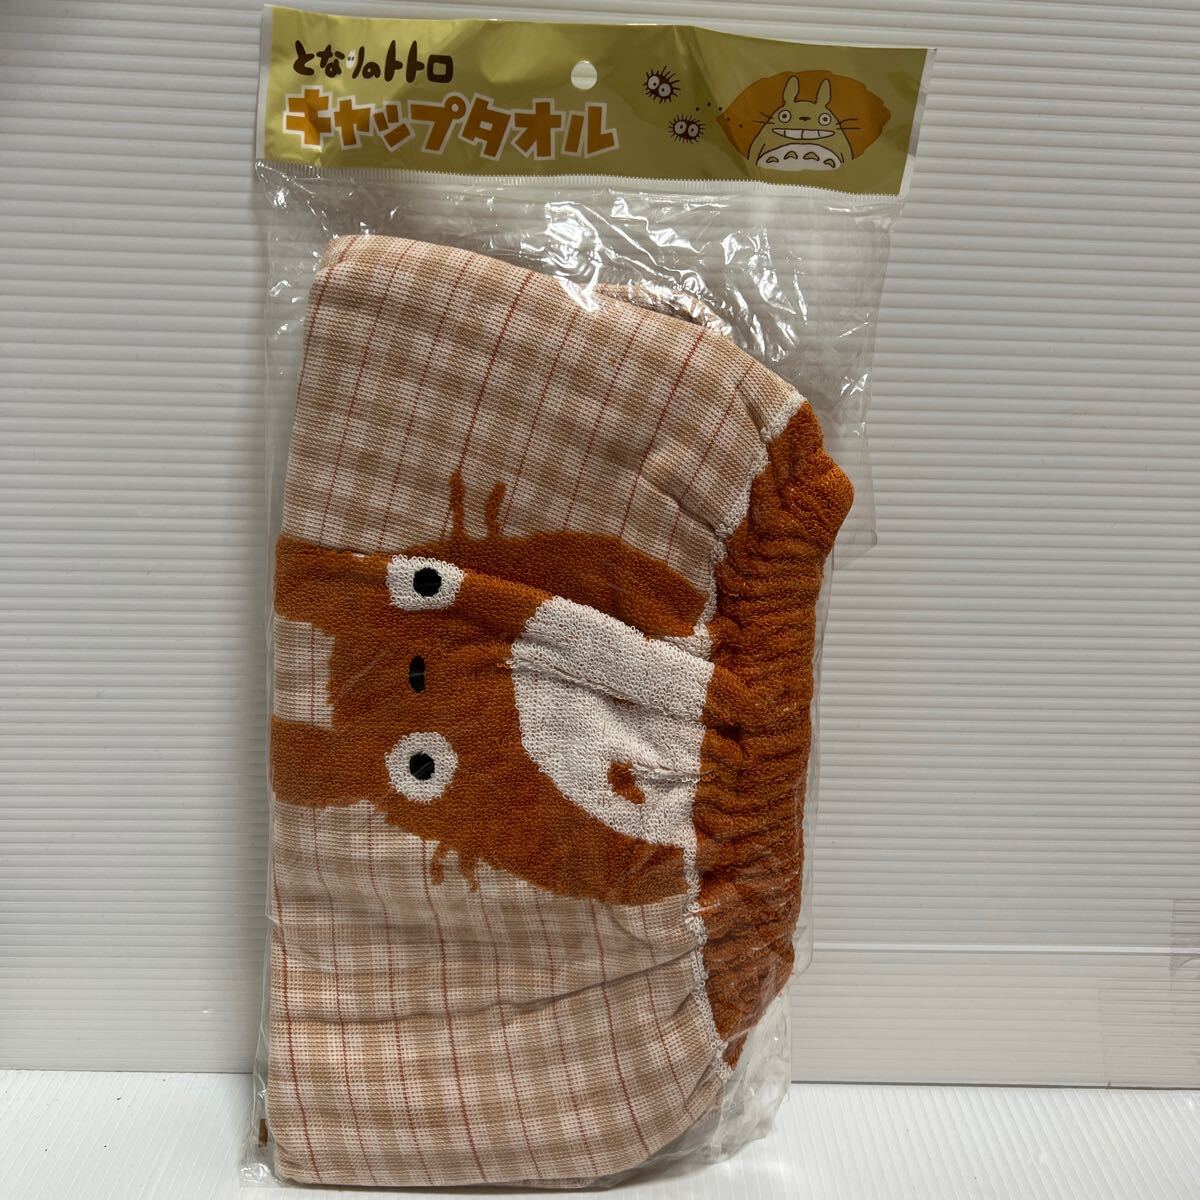  Tonari no Totoro cap towel unused unopened 